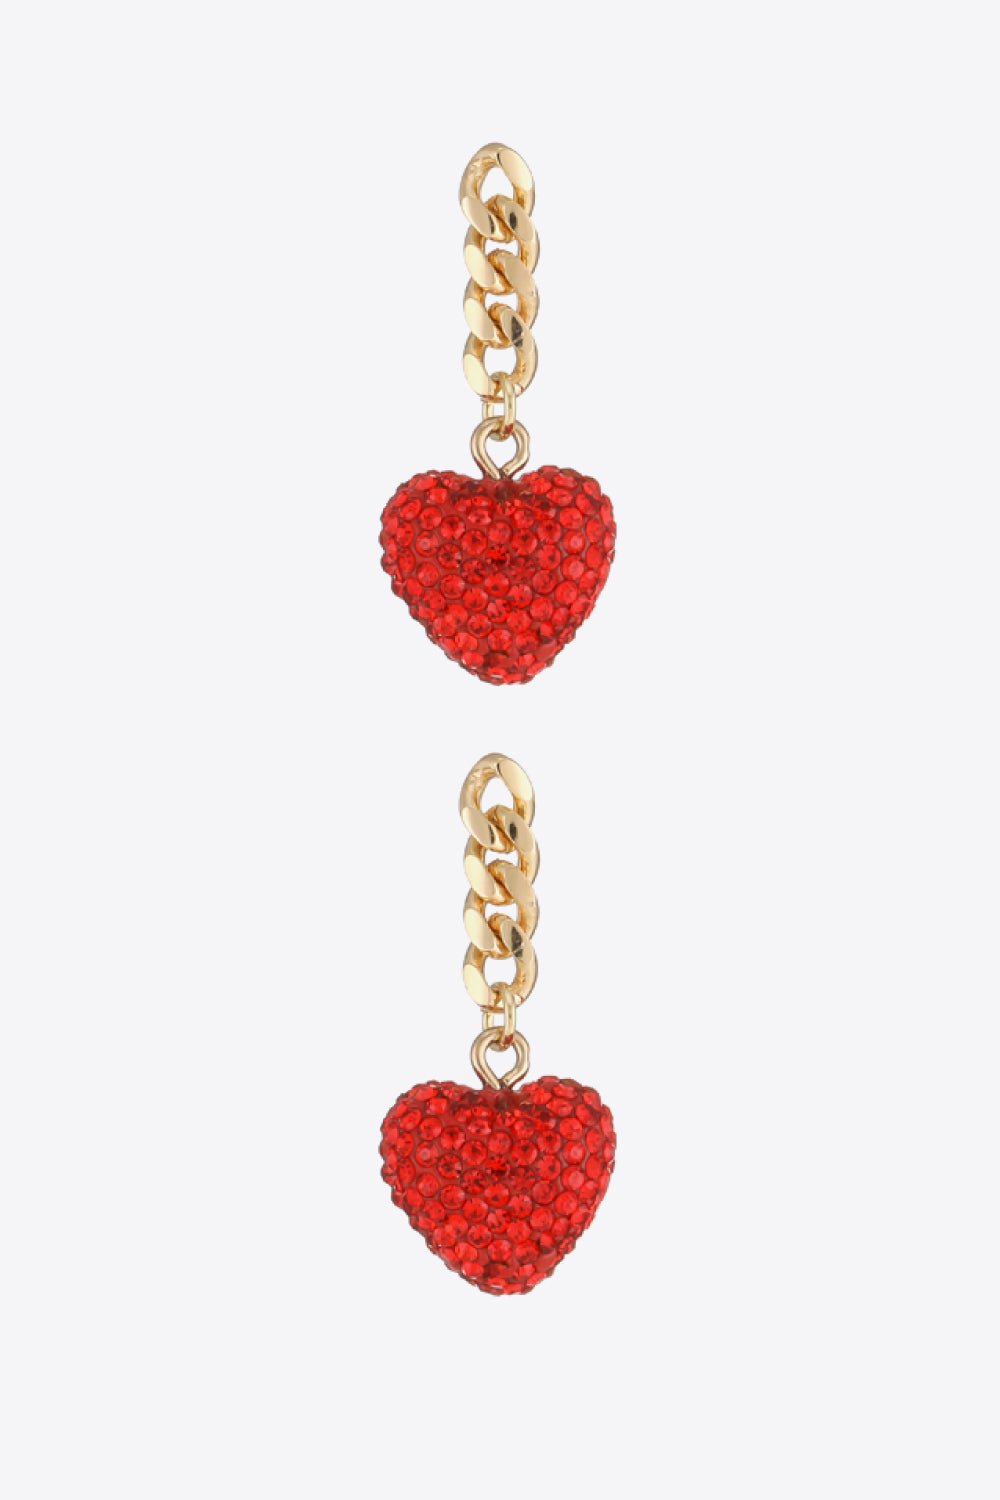 Rhinestone Heart Chain Drop Earrings - BloomBliss.com